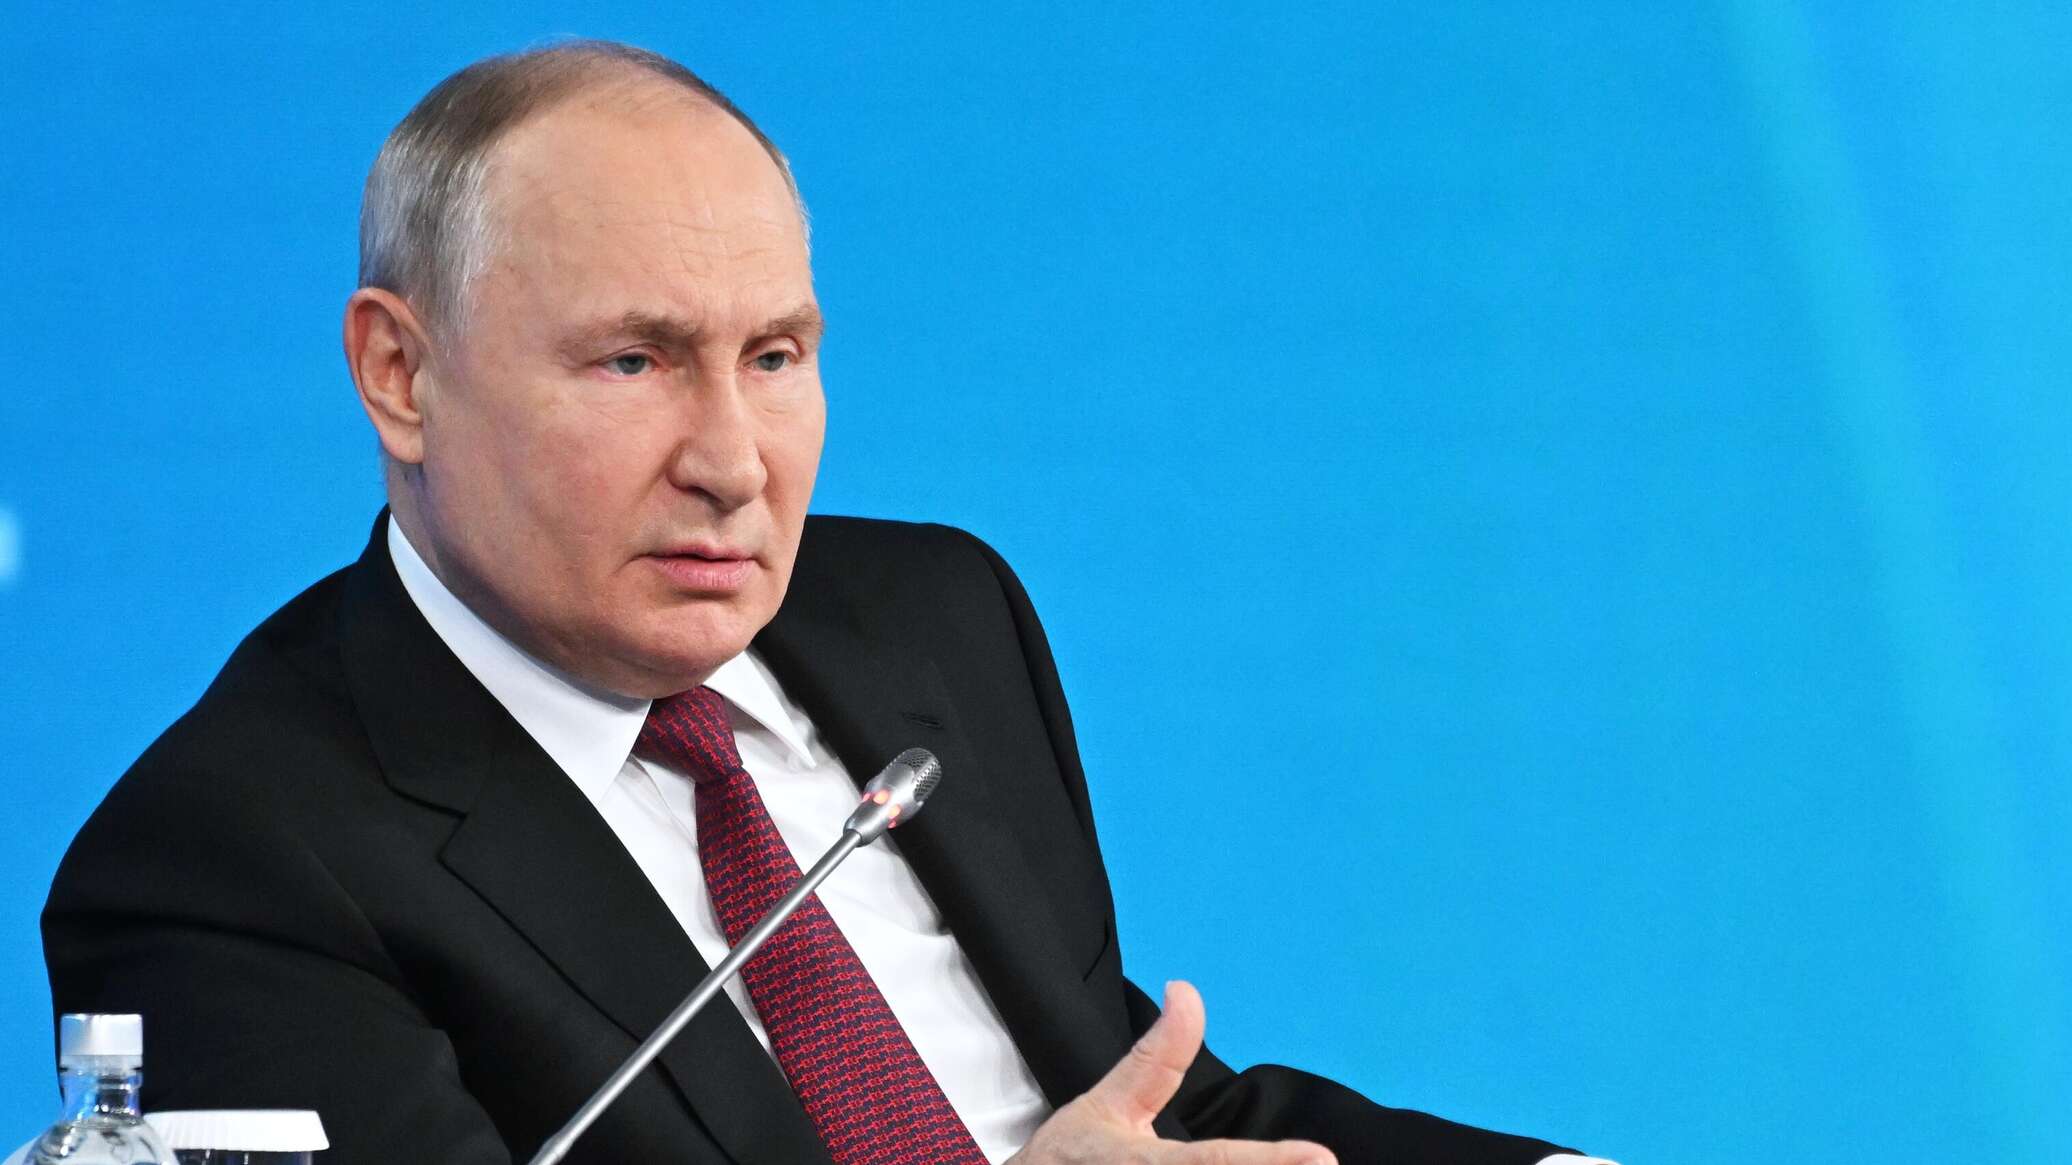 بوتين يعلن عن عملية "المرتزق" لمكافحة الإرهاب